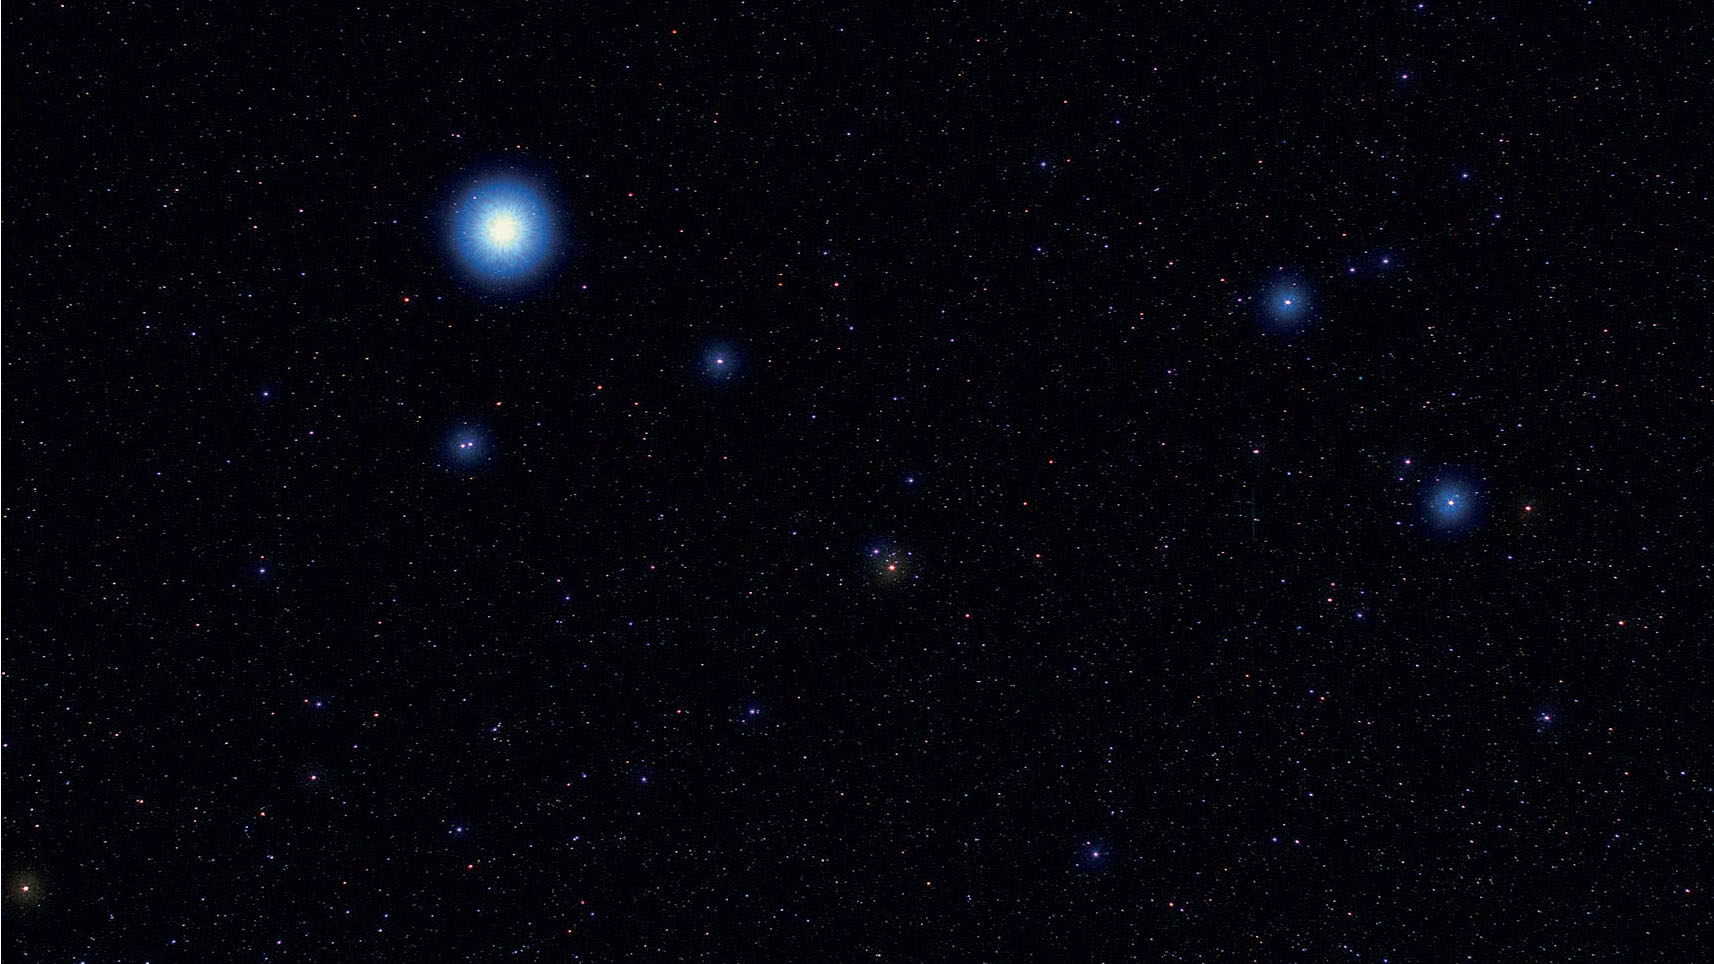 Logo na fotografia, é possível avistar alguns dos alvos deste passeio na constelação Lyra. Marcus Degenkolbe / CCD Guide 